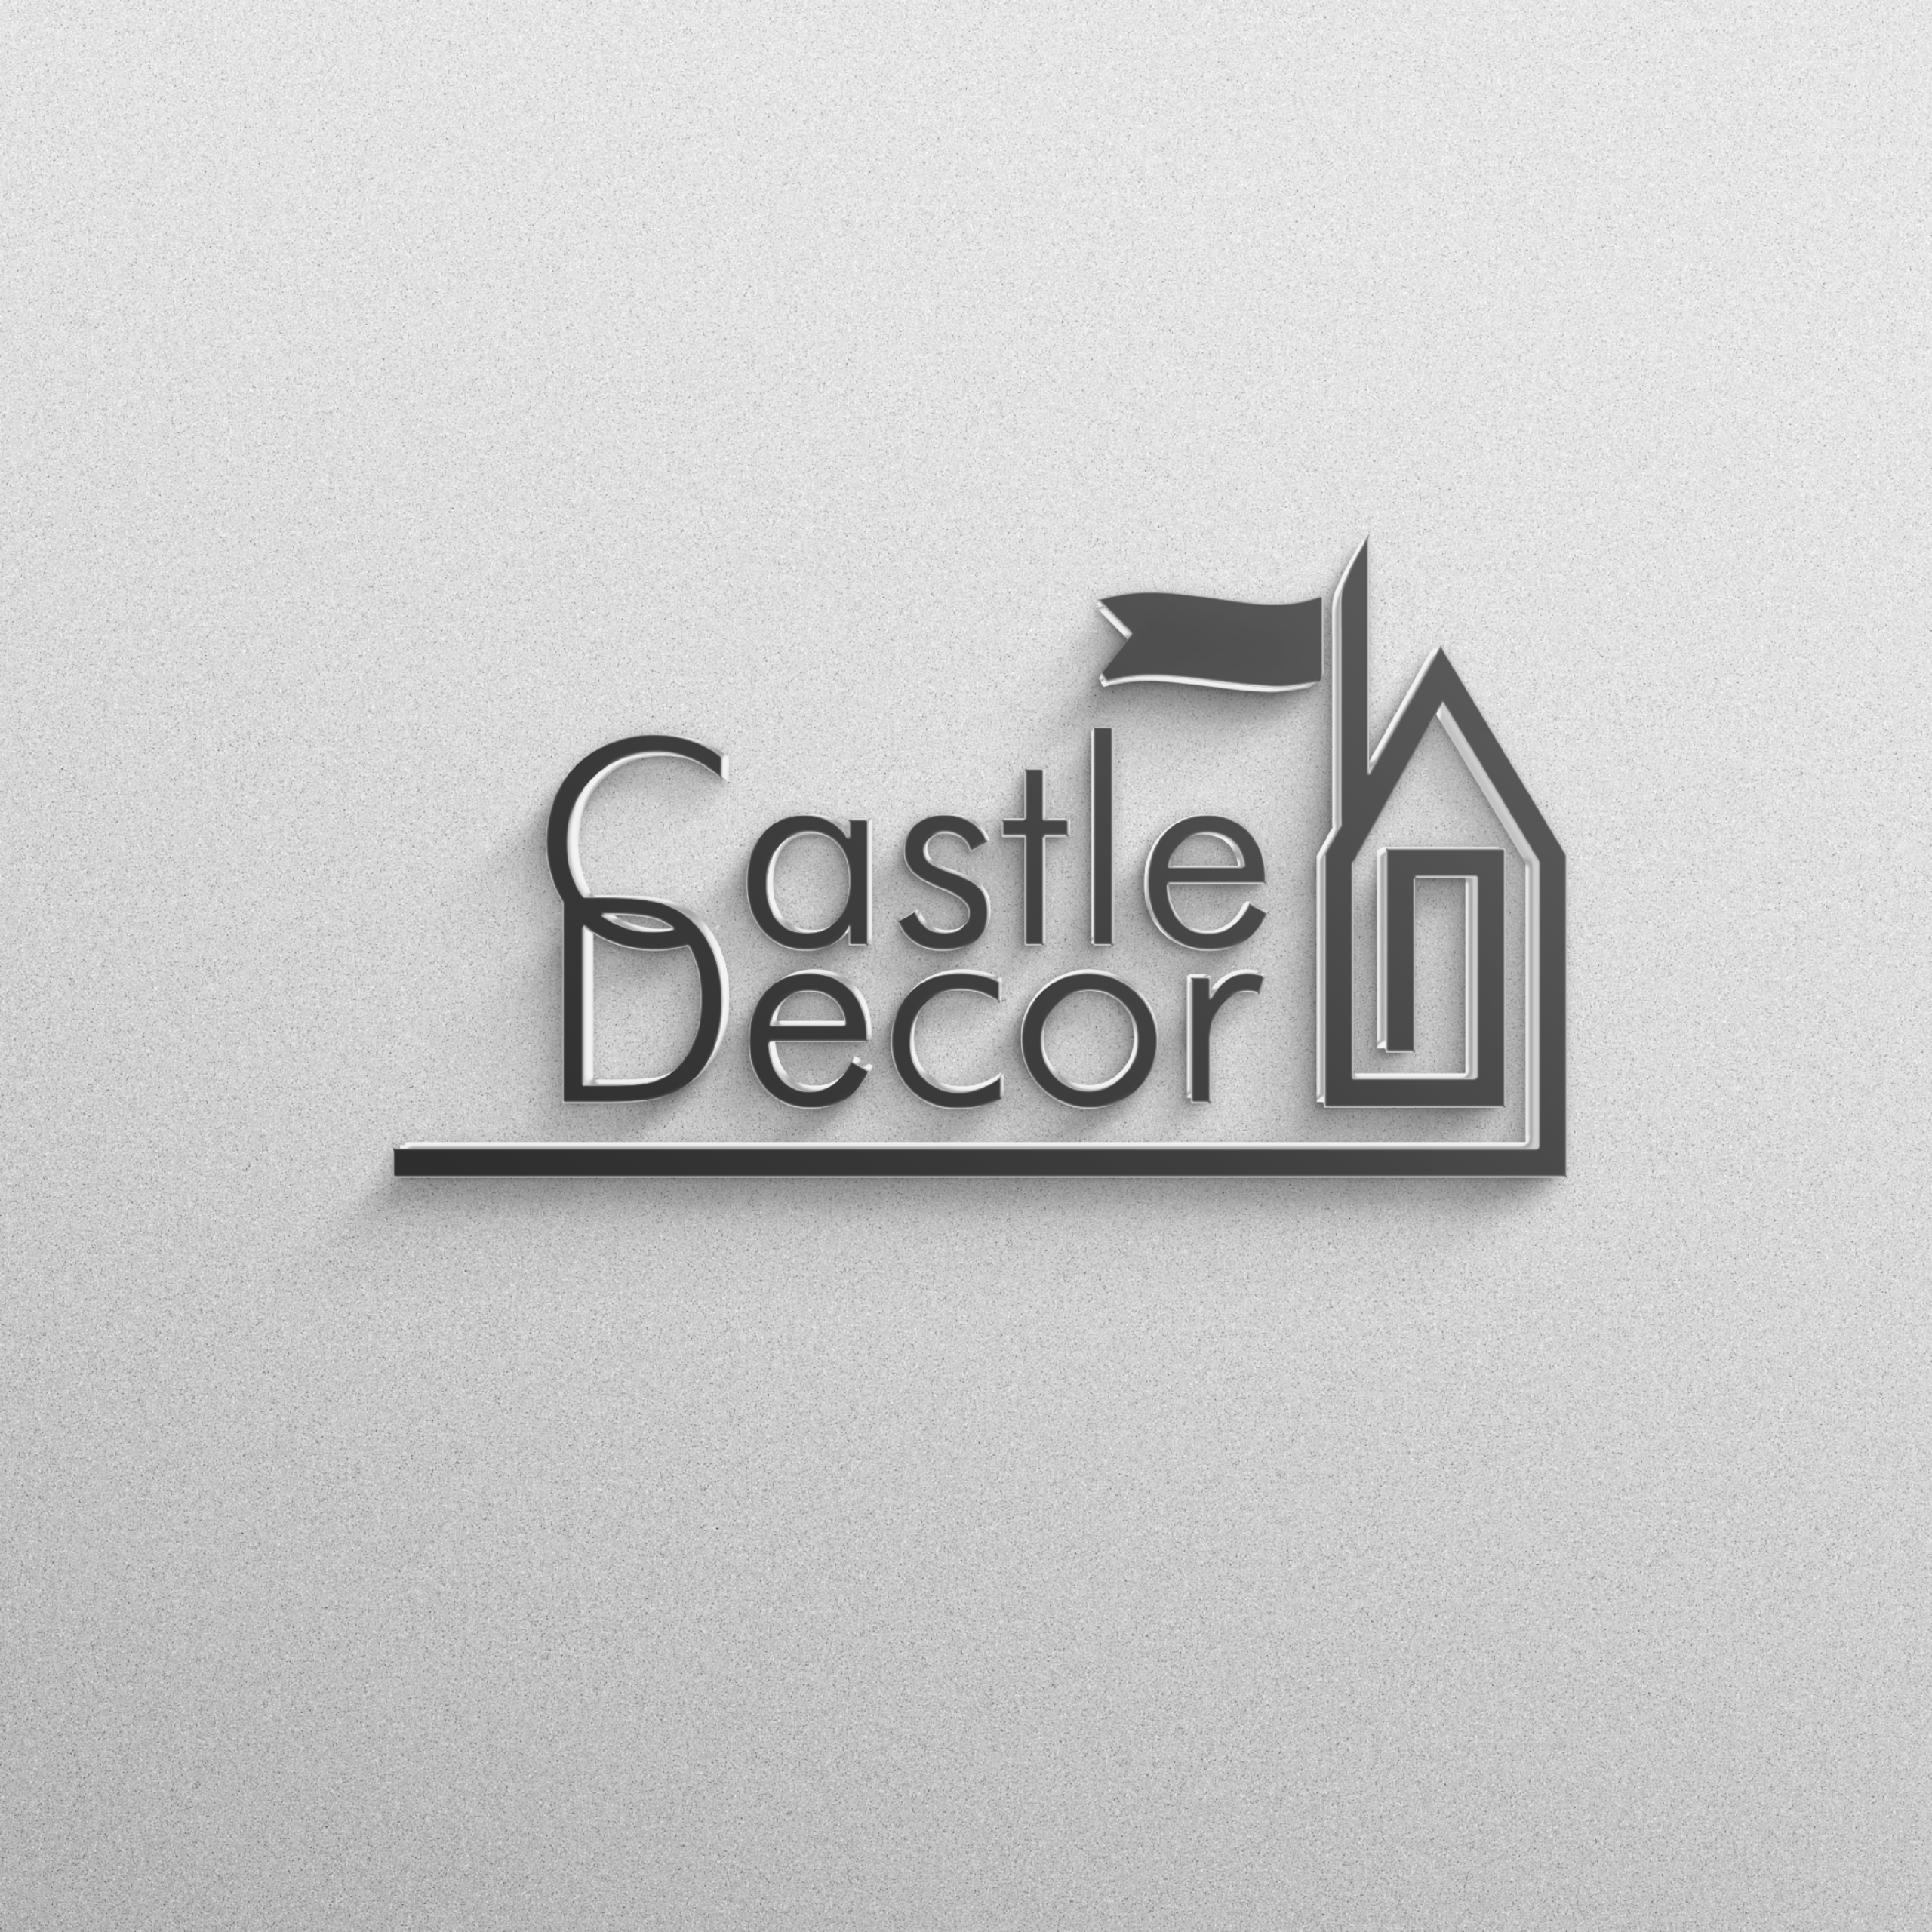 Visual identity design for Castle Decor